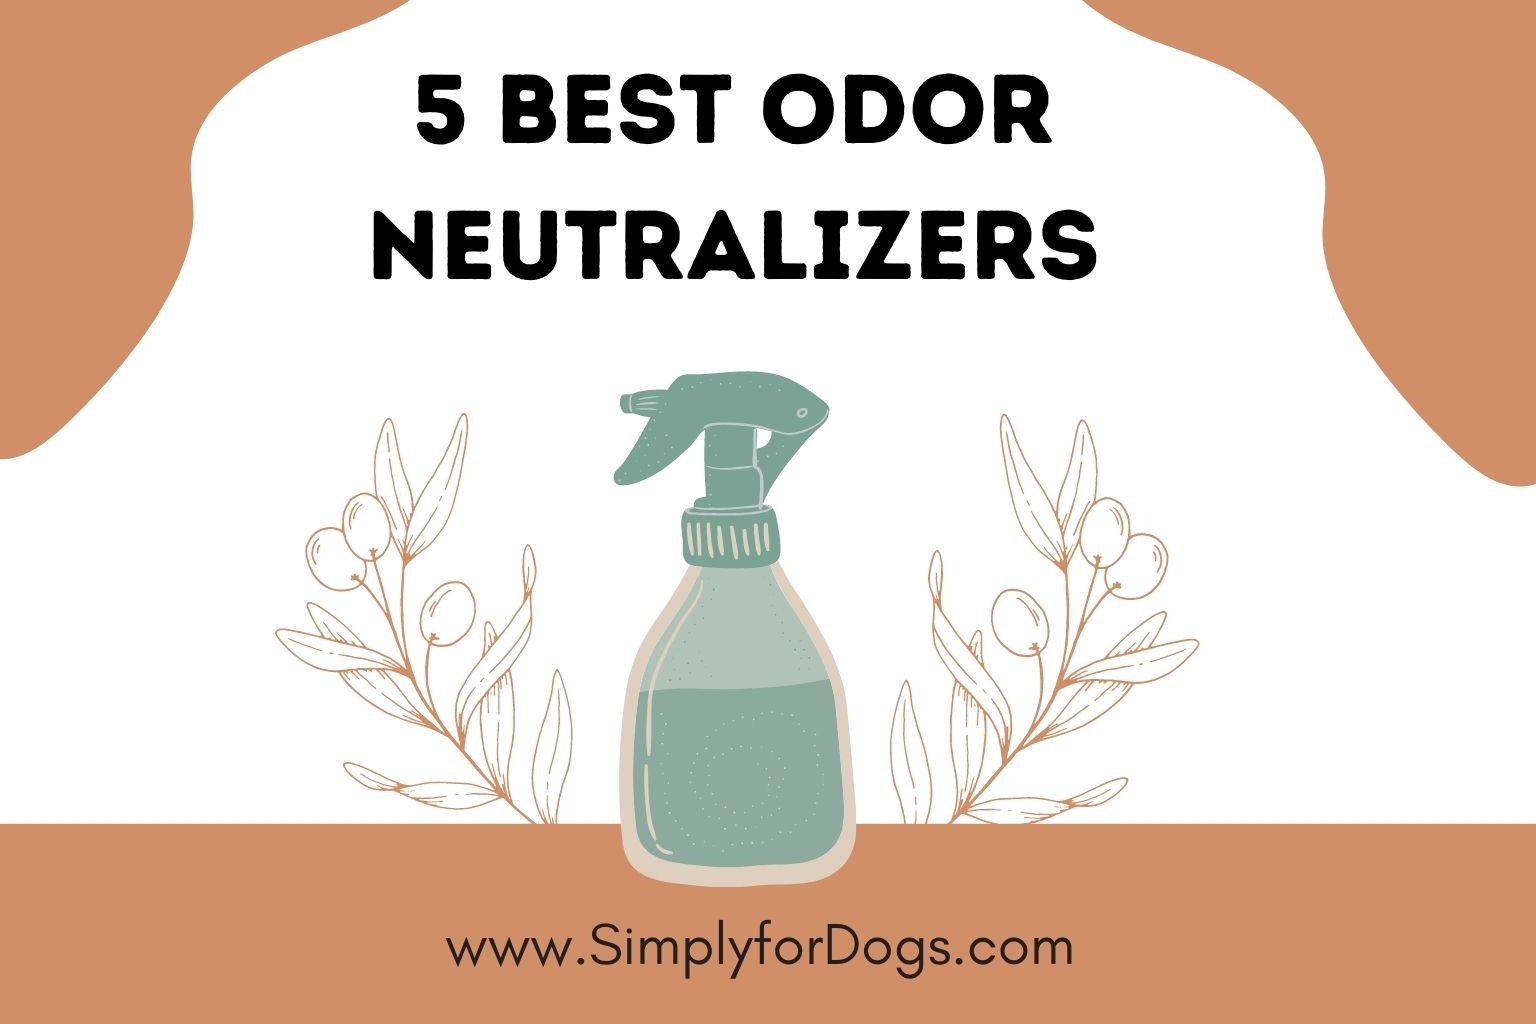 5 Best Odor Neutralizers